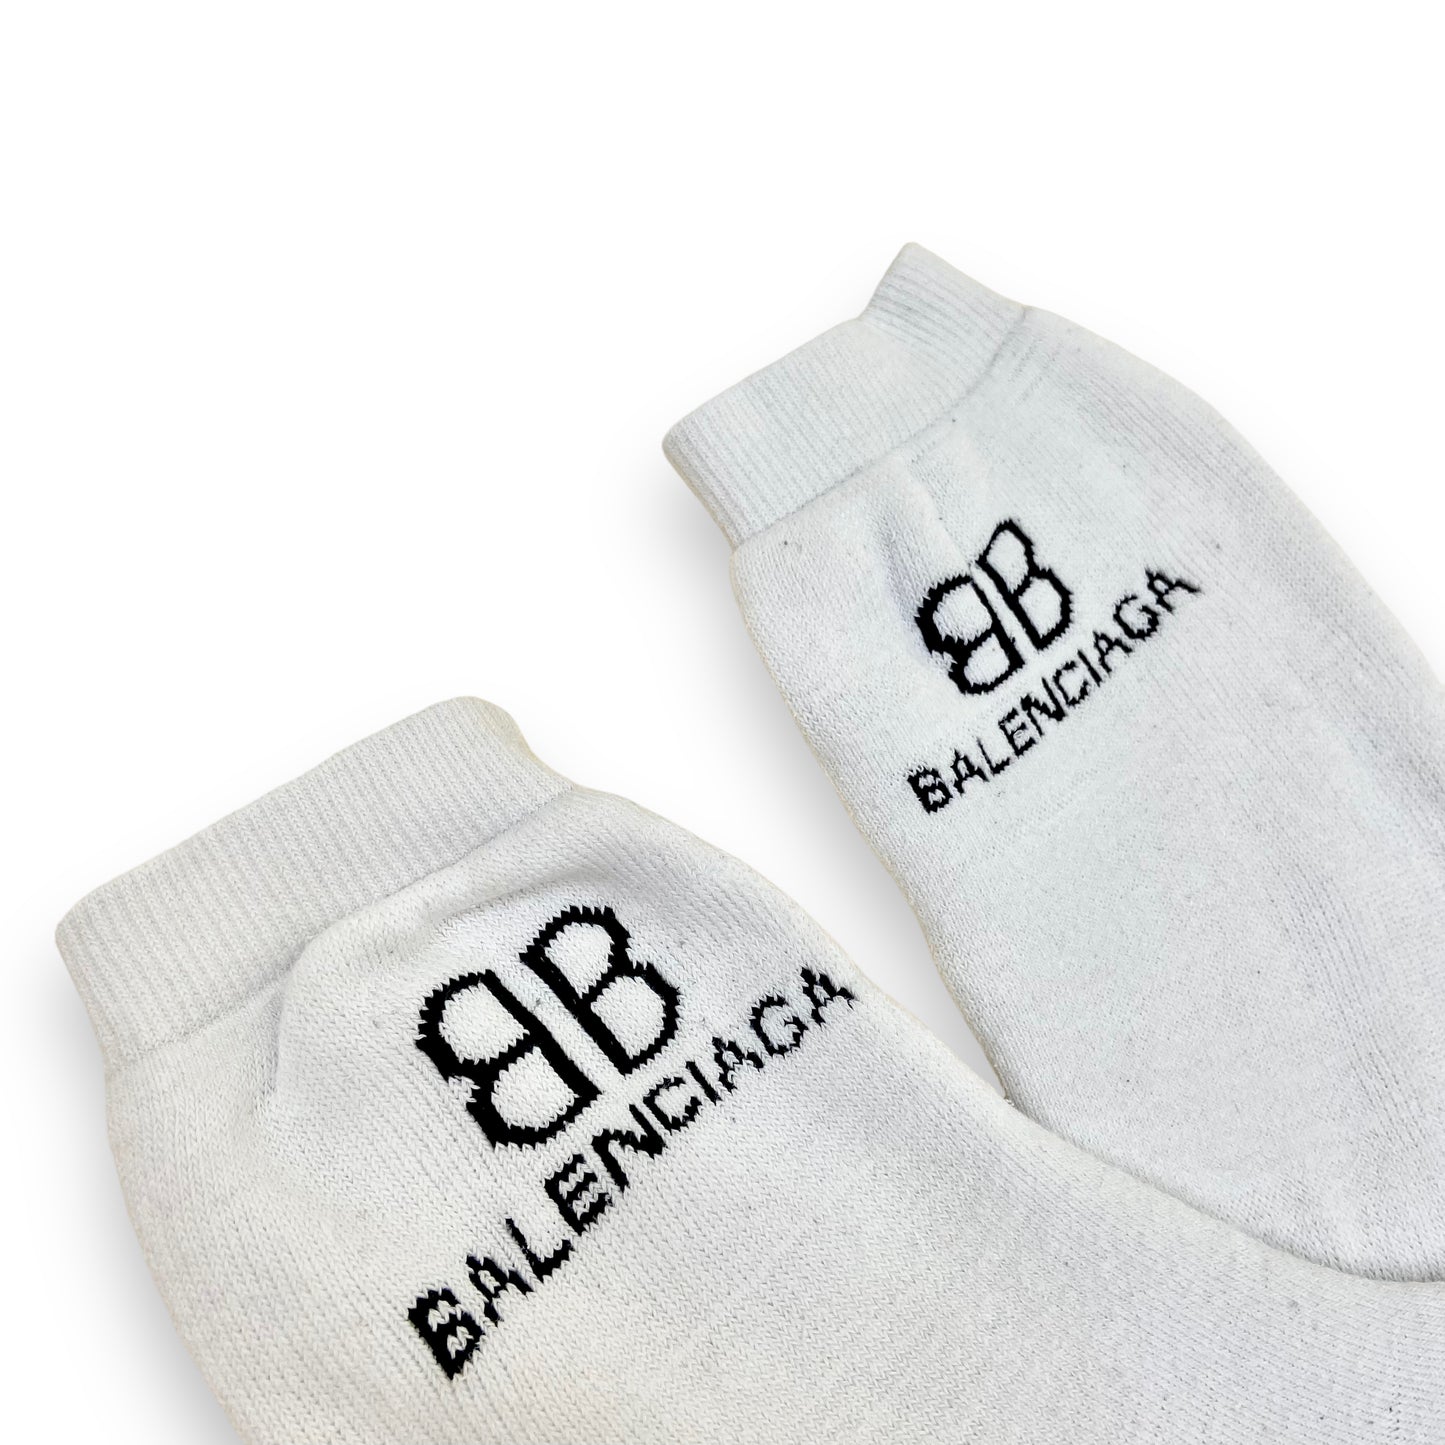 BALENCIAGA SOCKS WHITE O/S